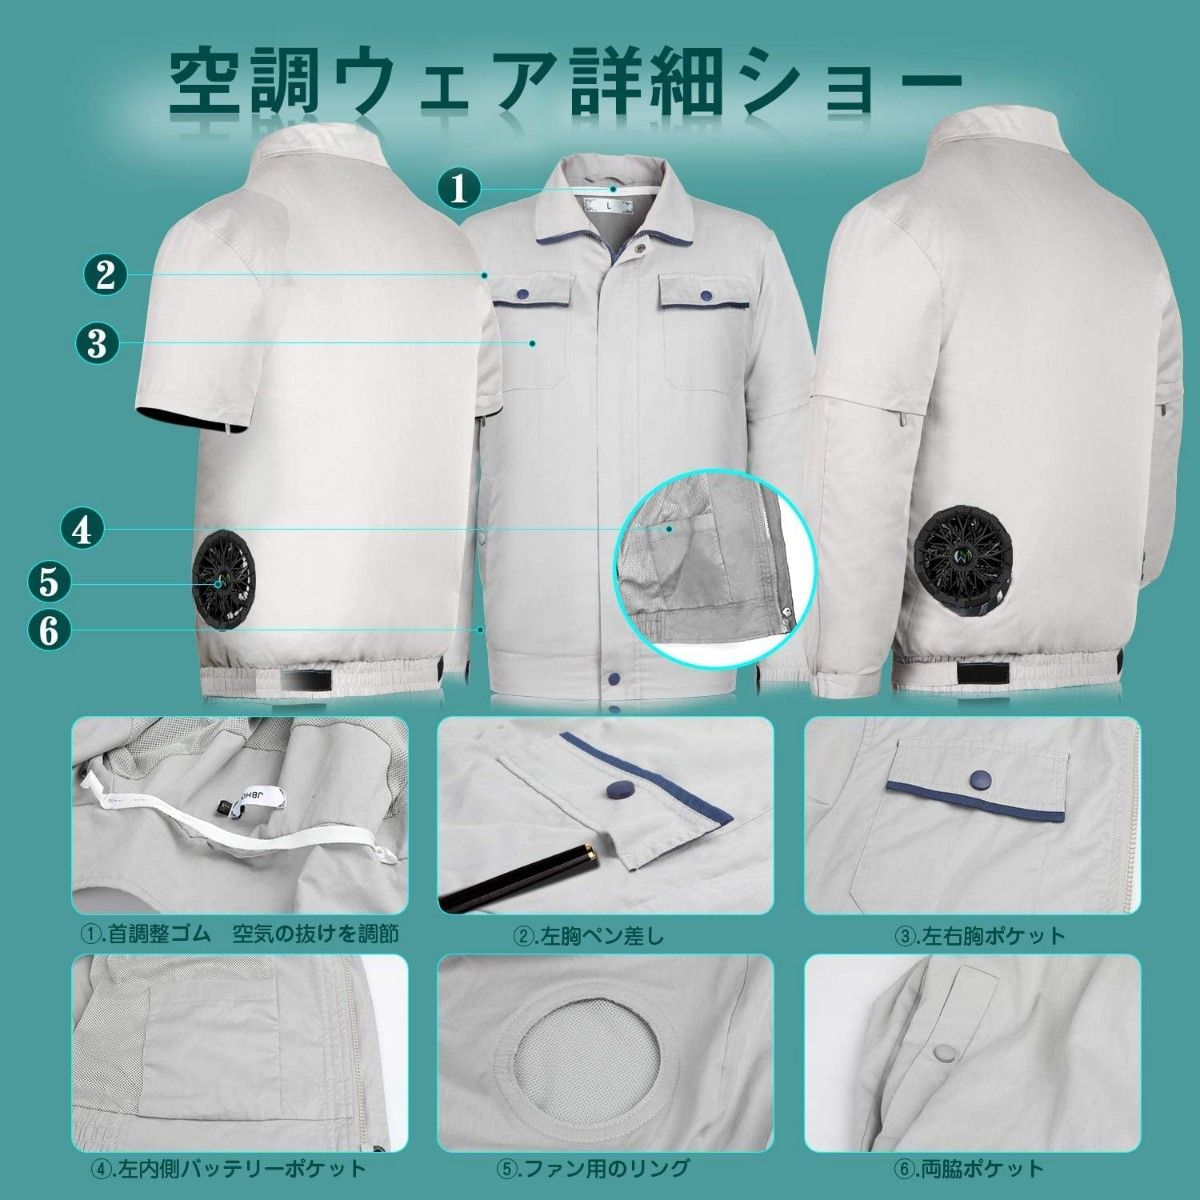 新品未使用 空調服 長袖半袖兼用 2XLサイズ ダークグレー色 作業 ファン付き UVカット 熱中症対策 高強度 釣り アウトドア